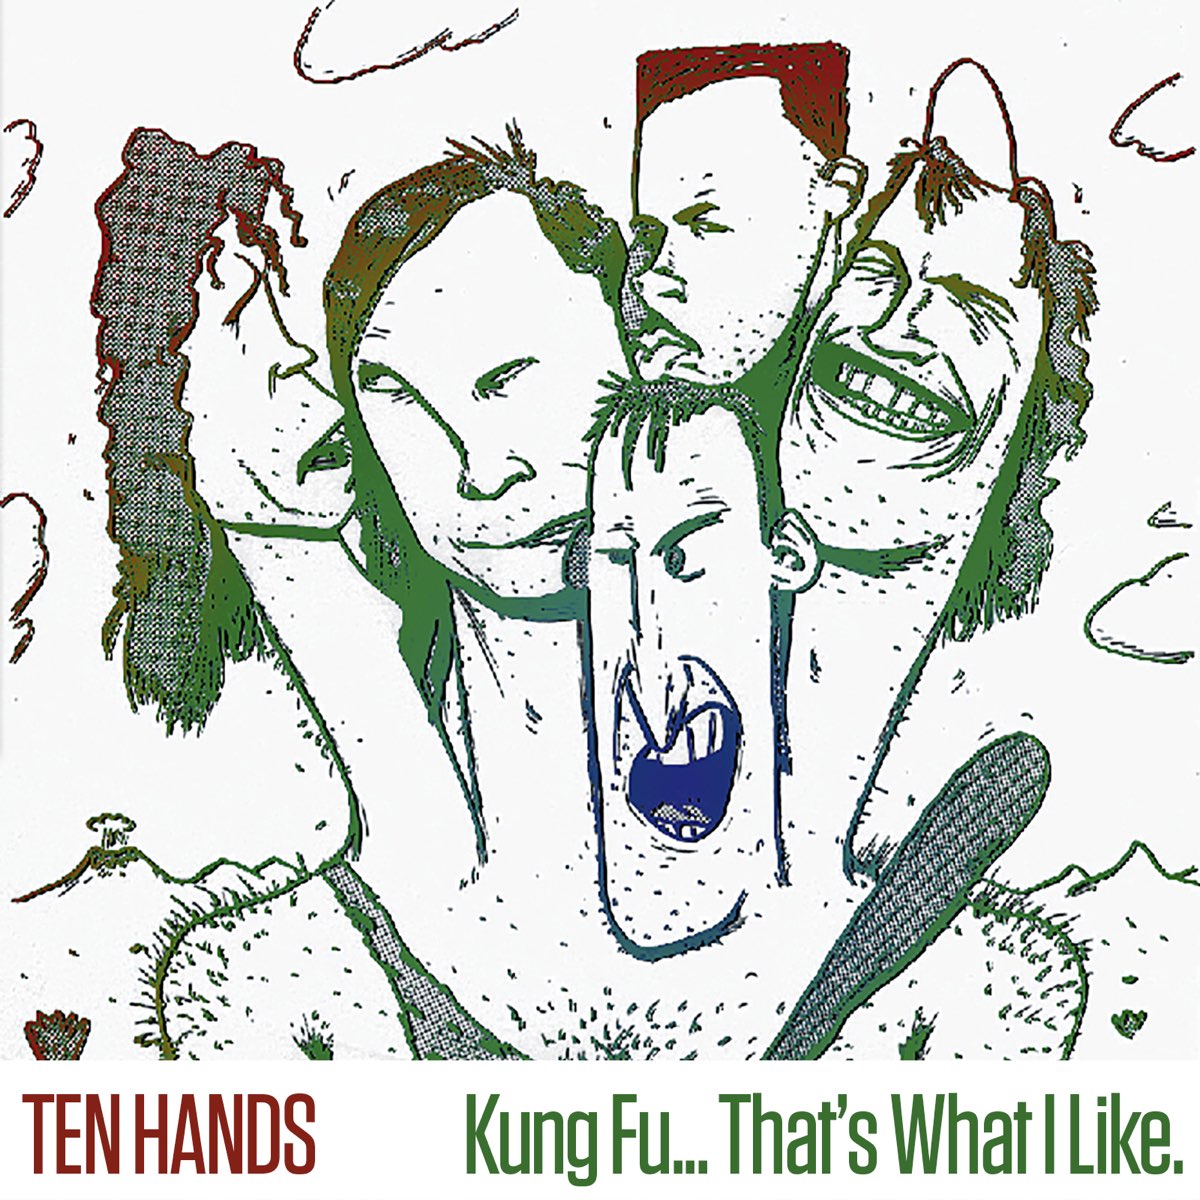 Ten hands. Hands песня.